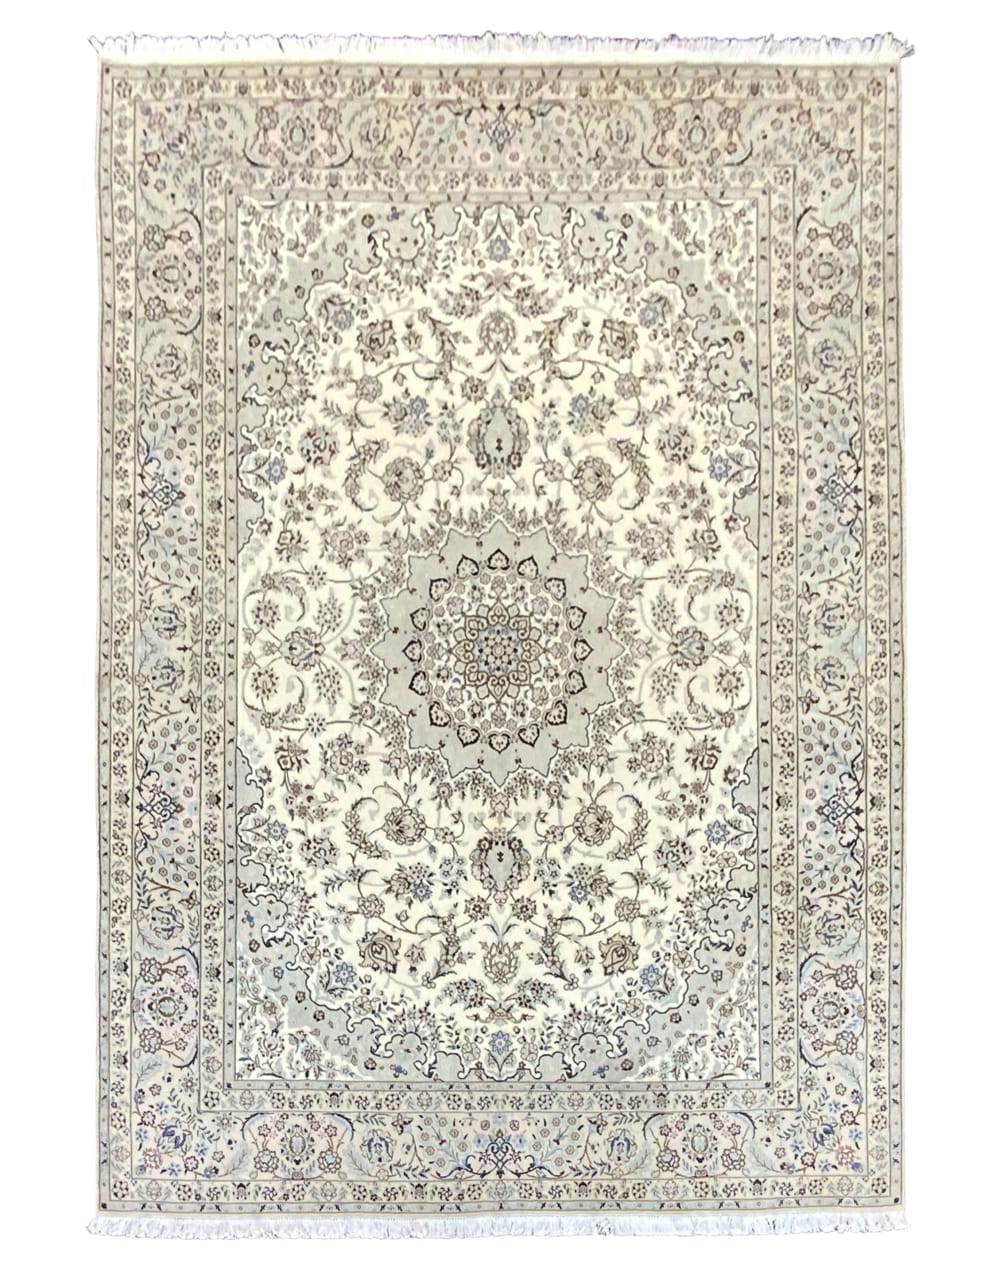 Rug#10291, Persian Nain 9LA, circa 1980, fine wool & silk pile, rare, Persia, size 356x250 cm (1)